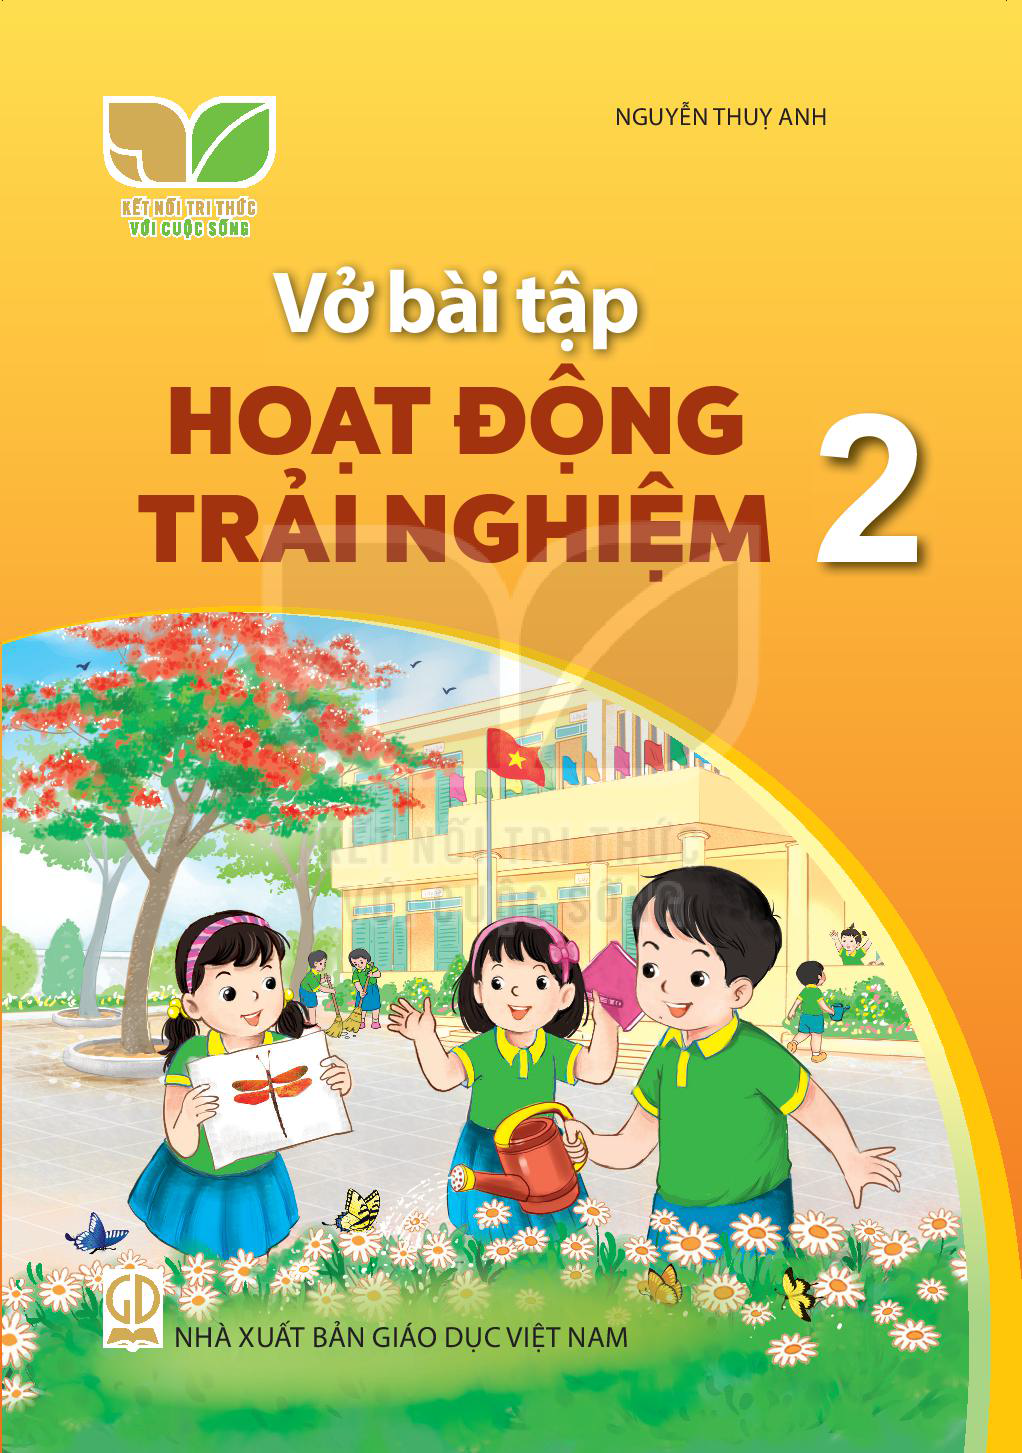 vo-bai-tap-hoat-dong-trai-nghiem-2-1040